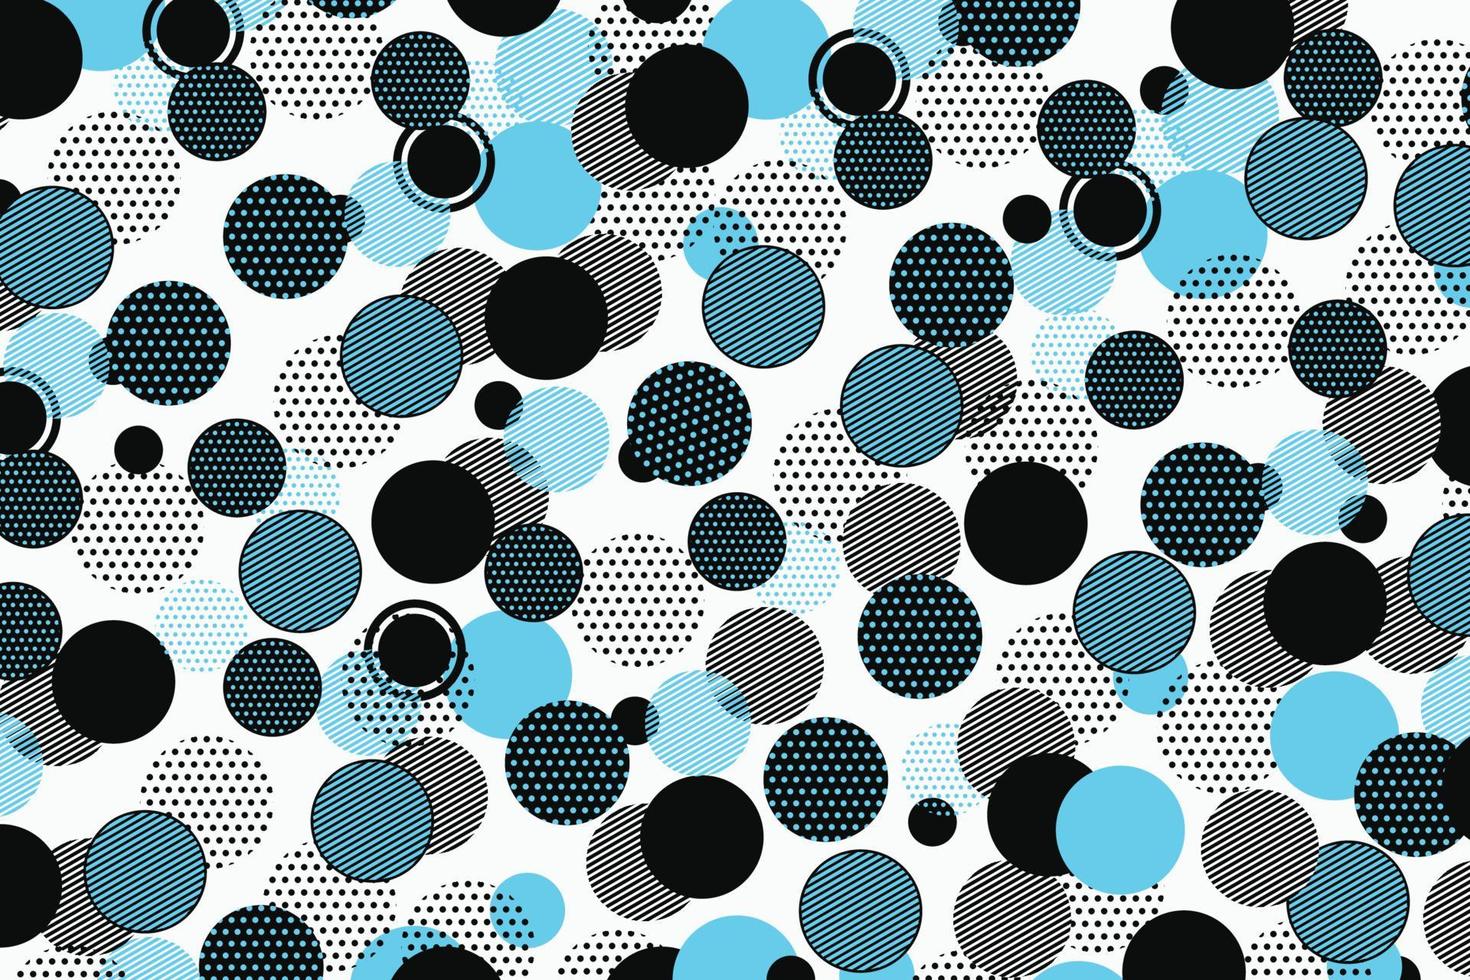 abstraktes schwarzes und blaues geometrisches Formmuster-Vektordesign. Illustrationsvektor eps10 vektor